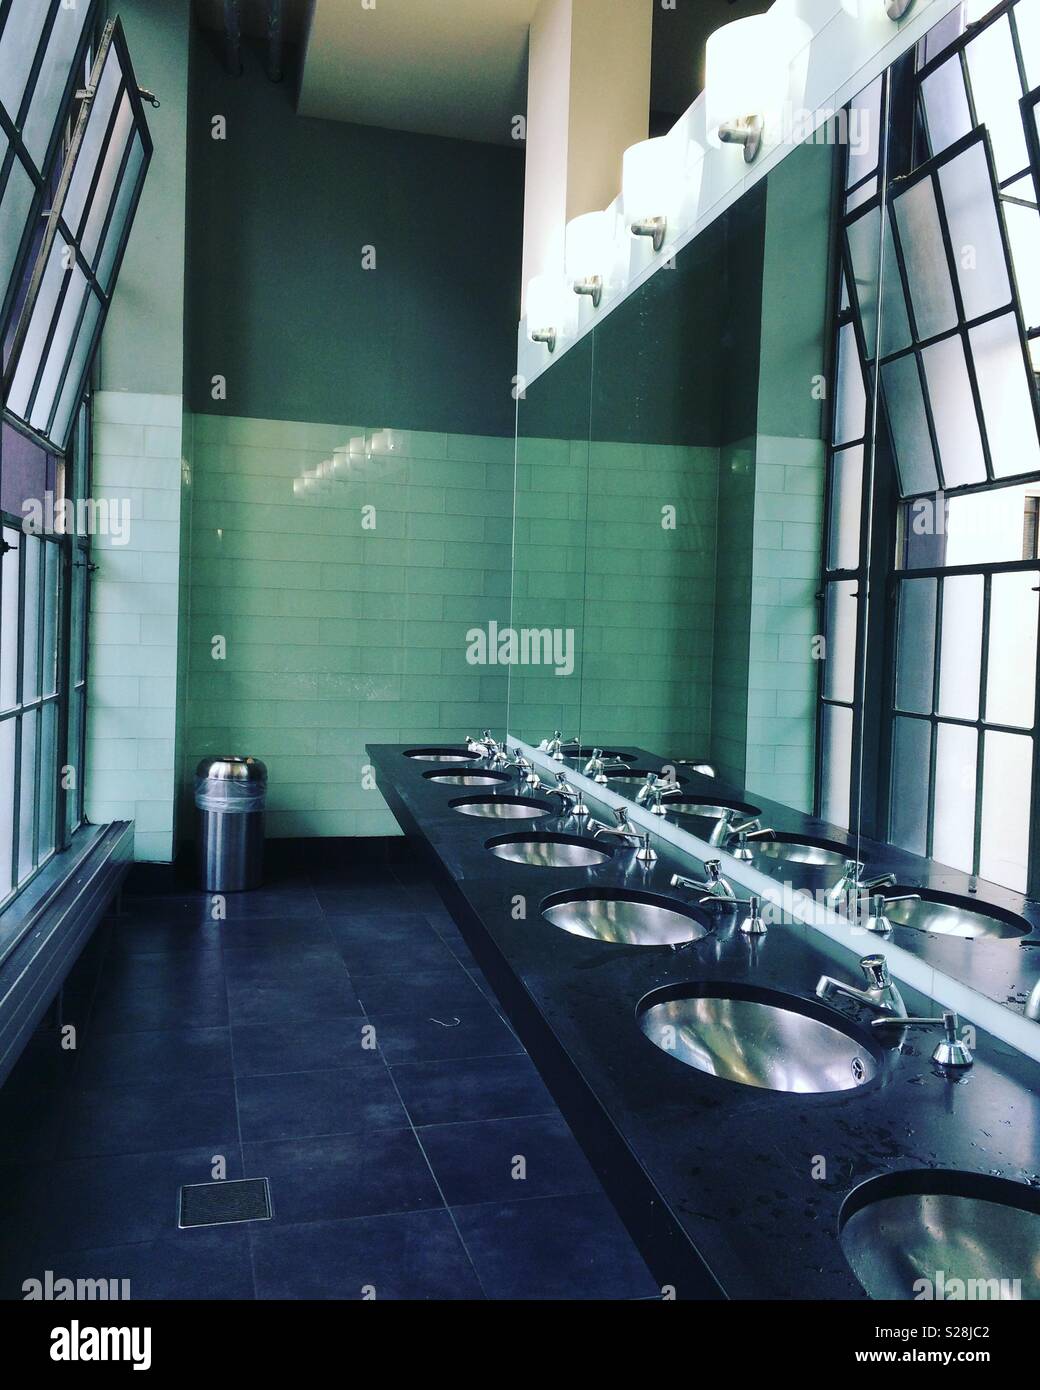 L'intérieur moderne de toilettes publiques Photo Stock - Alamy